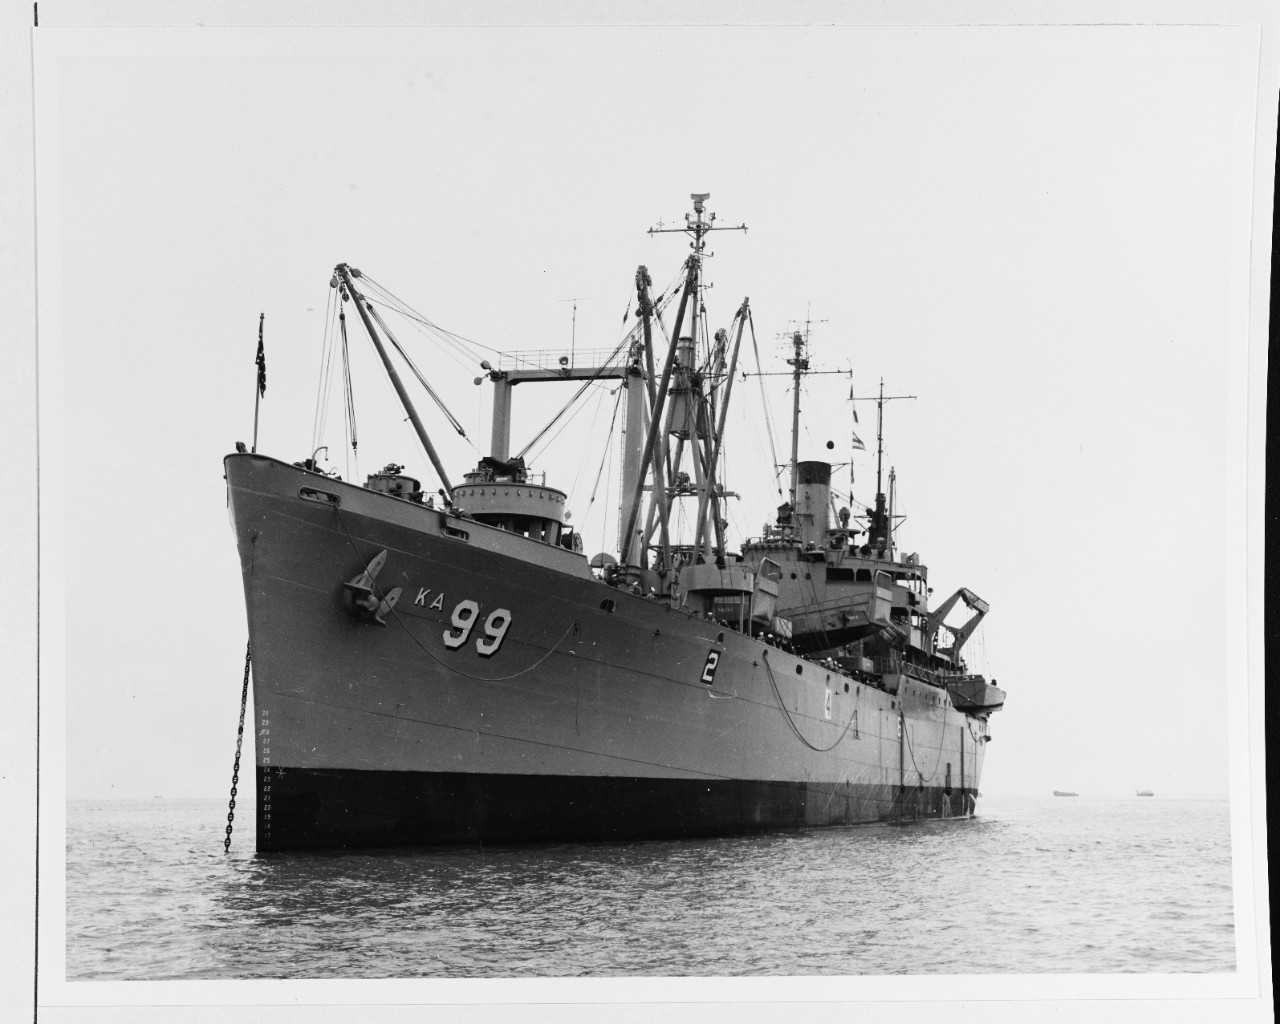 USS ROLETTE (AKA-99)